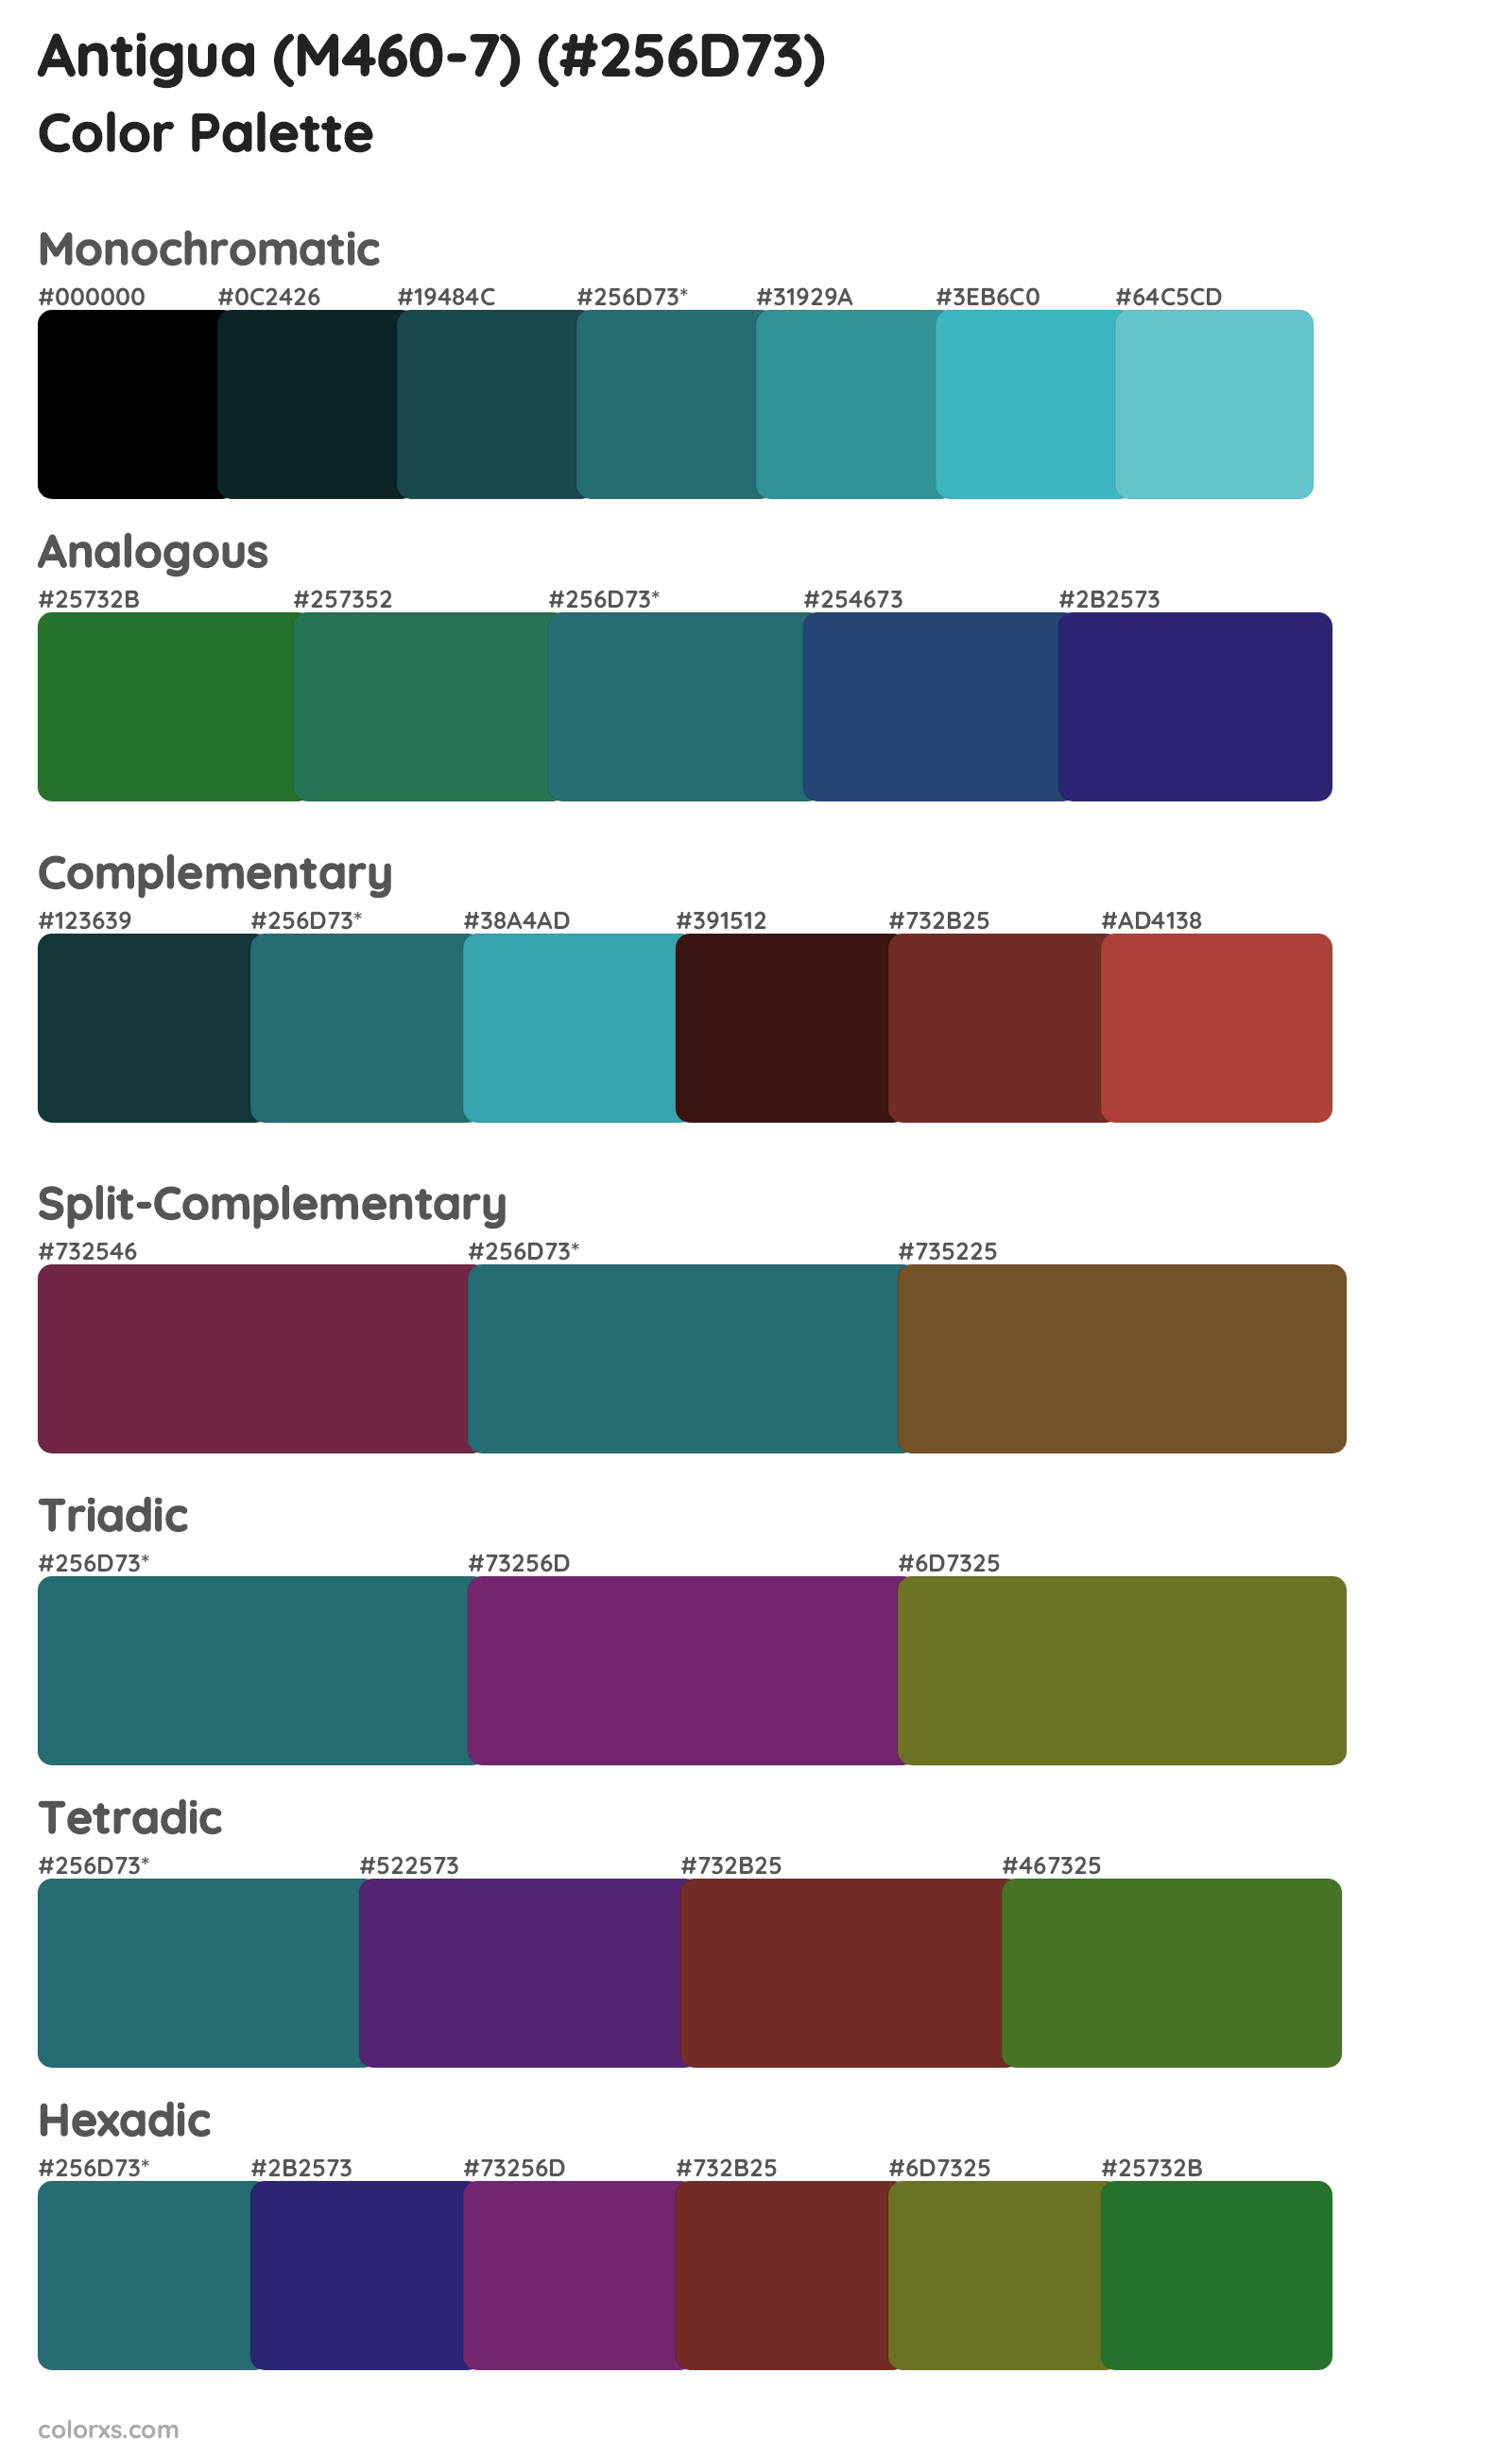 Antigua (M460-7) Color Scheme Palettes